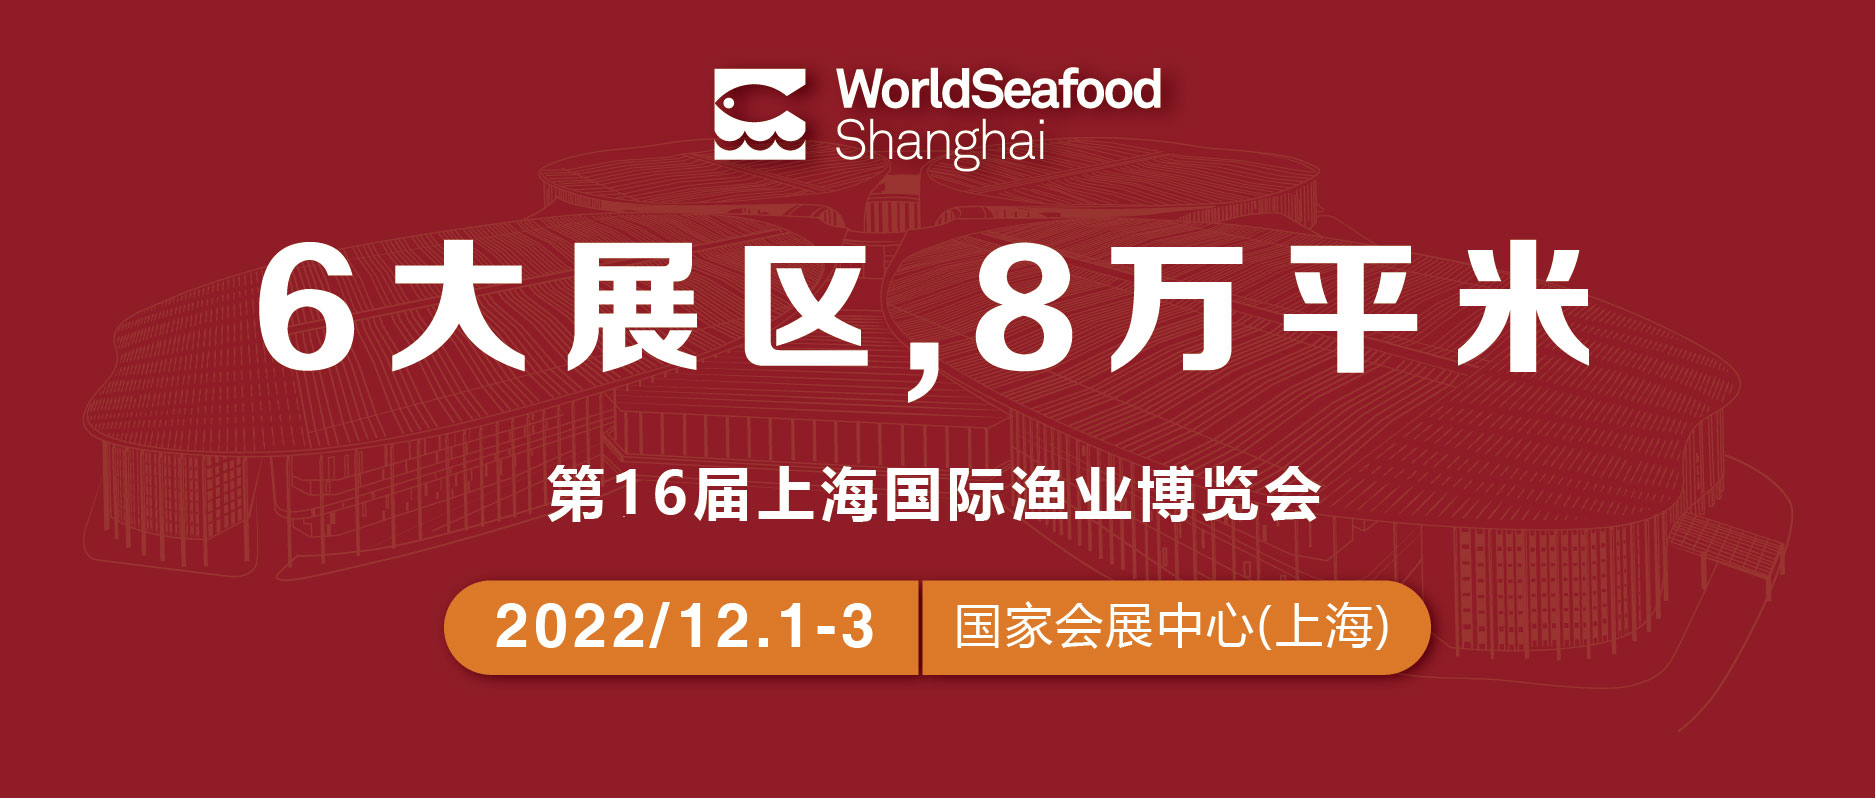 6大展区，8万平米！第16届上海国际渔博会与您相约上海，共创未来！